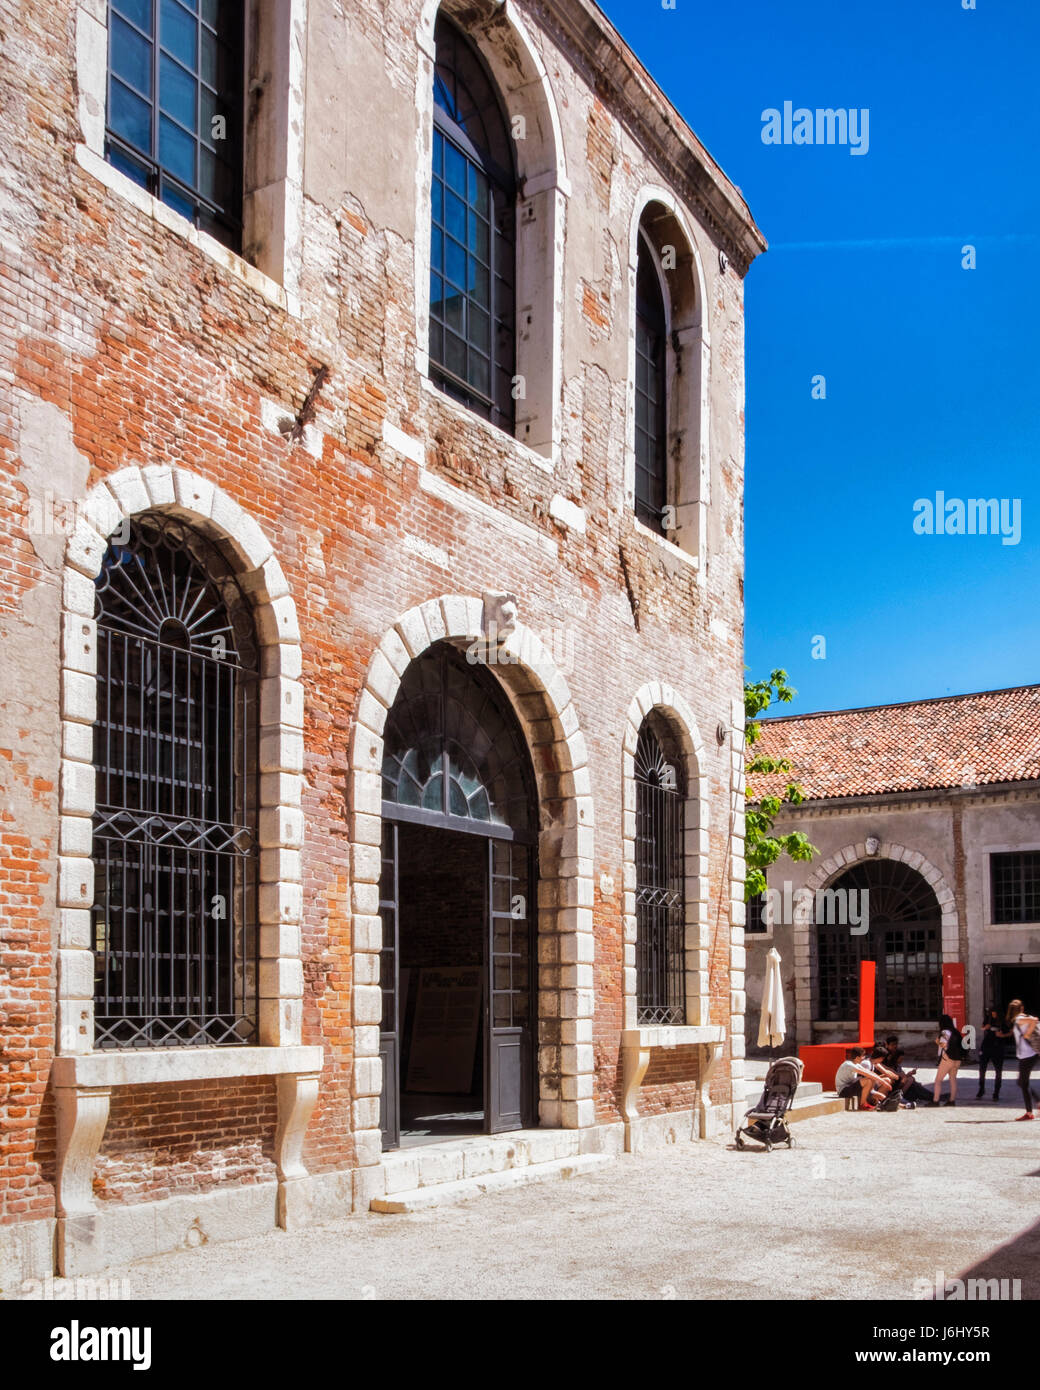 Venezia, Castello,Giardini.57ma Biennale di Venezia 2017,La Biennale di Venezia,bellissimo vecchio arsenale di mattoni usati per l'arte visualizza con cielo blu Foto Stock